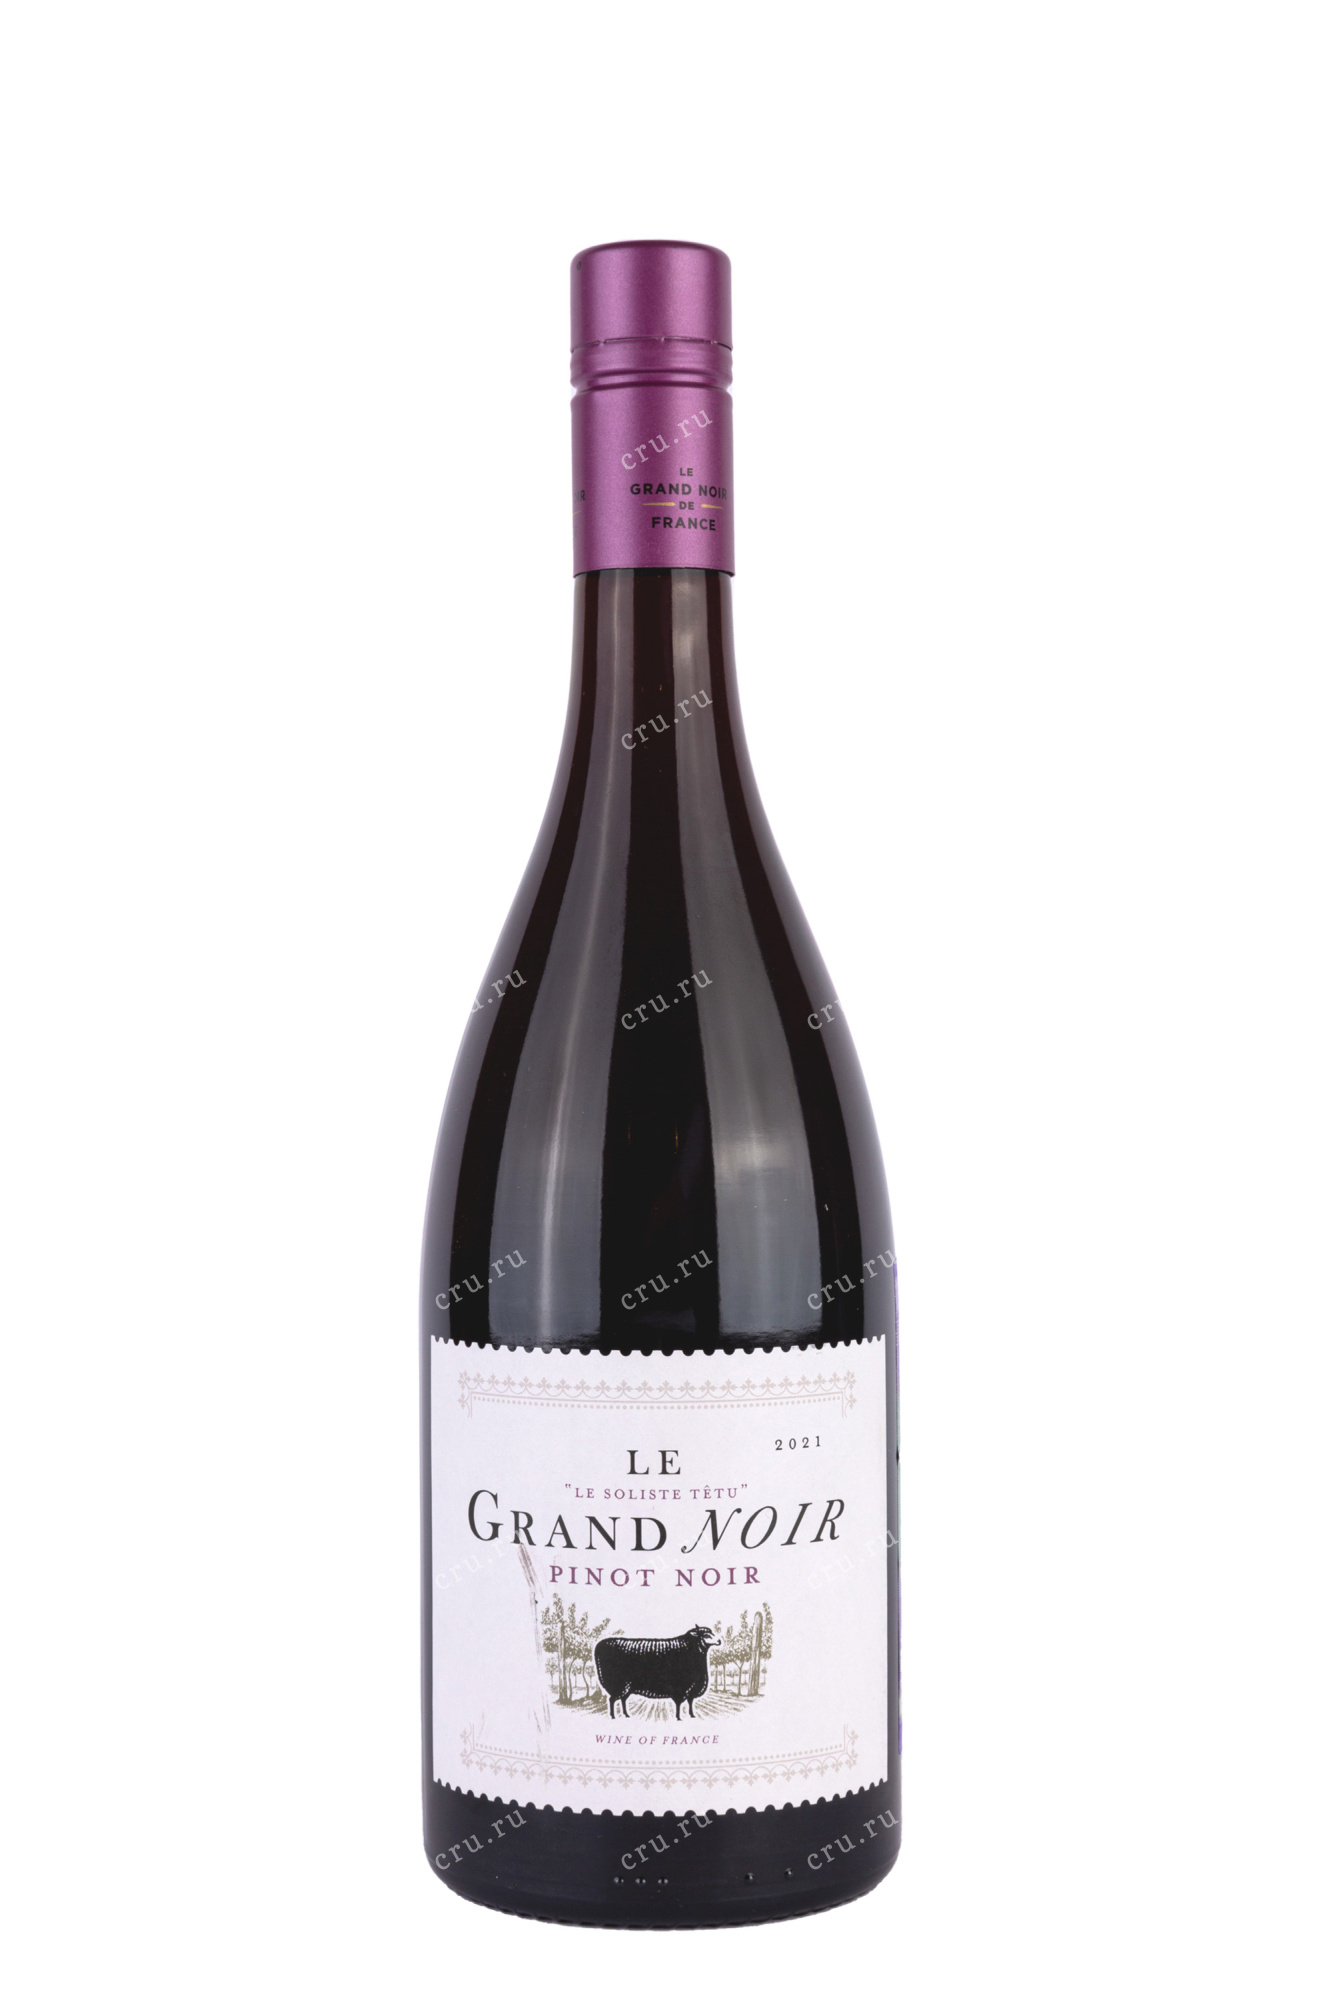 Legrand noir. Ле Гранд Нуар Пино Нуар. Вино Legrand Pinot Noir. Grand Noir Pinot Noir. Grand Noir вино Pinot Noir.